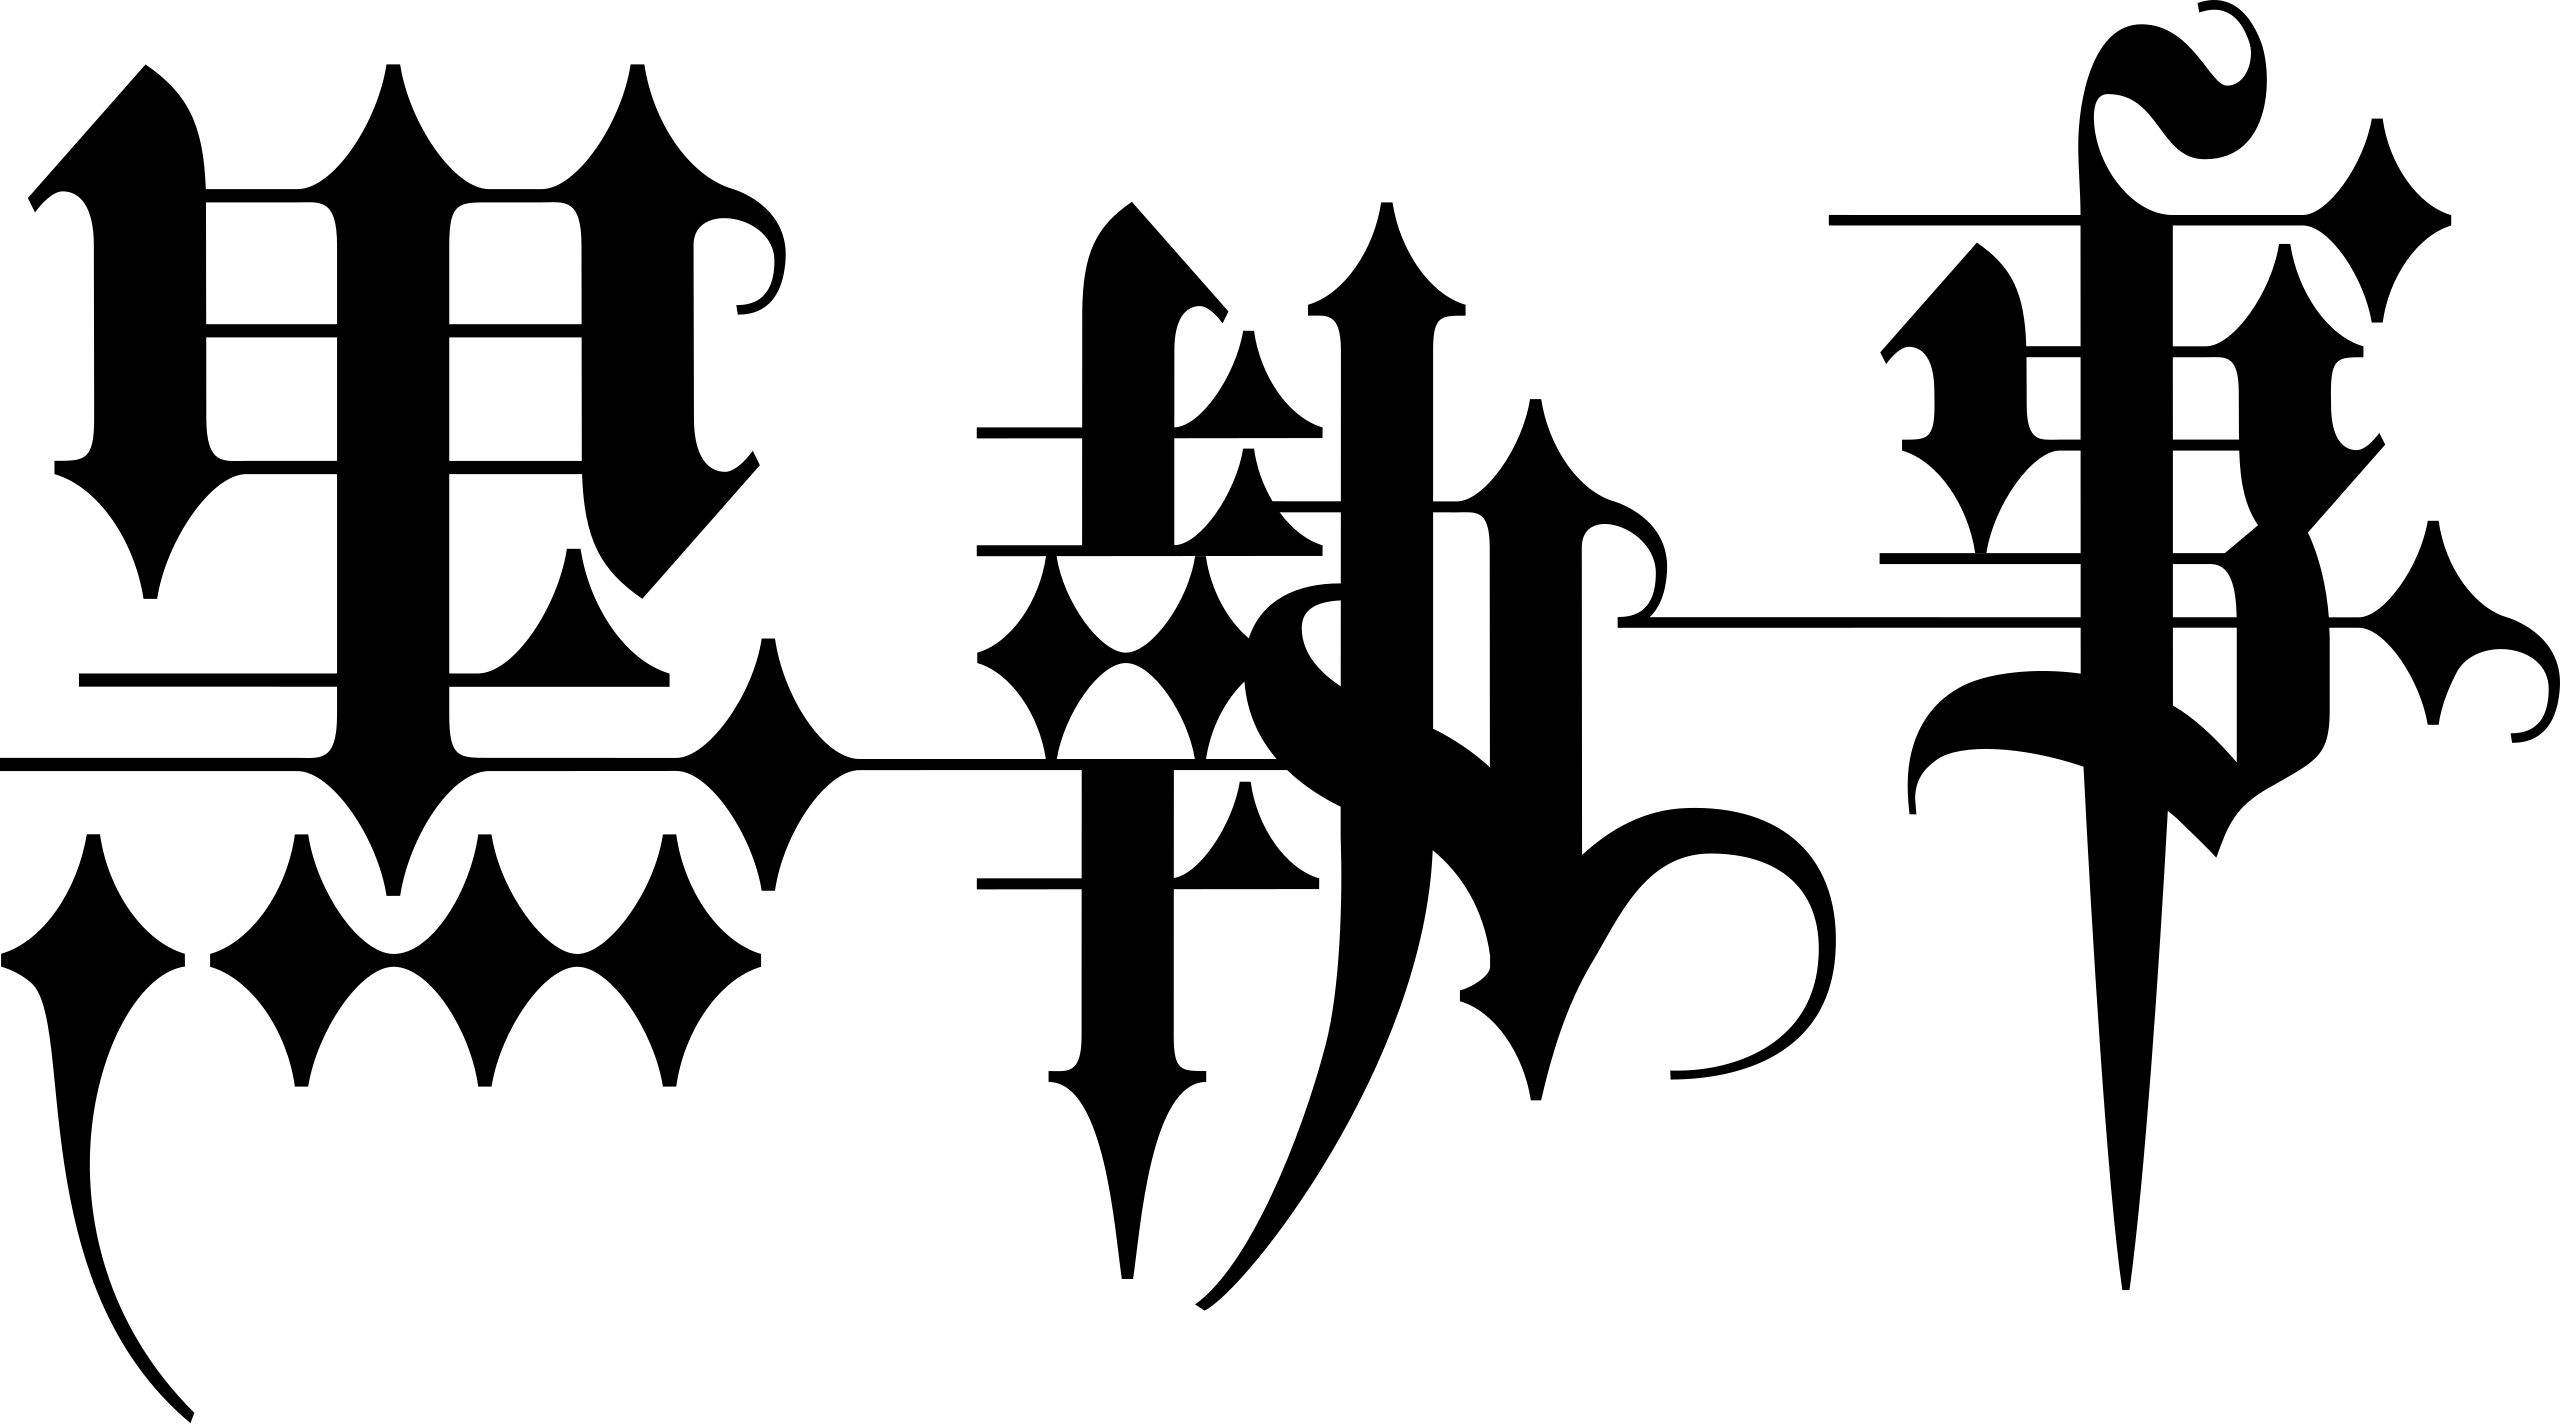 File:Square Enix logo.svg - Wikipedia